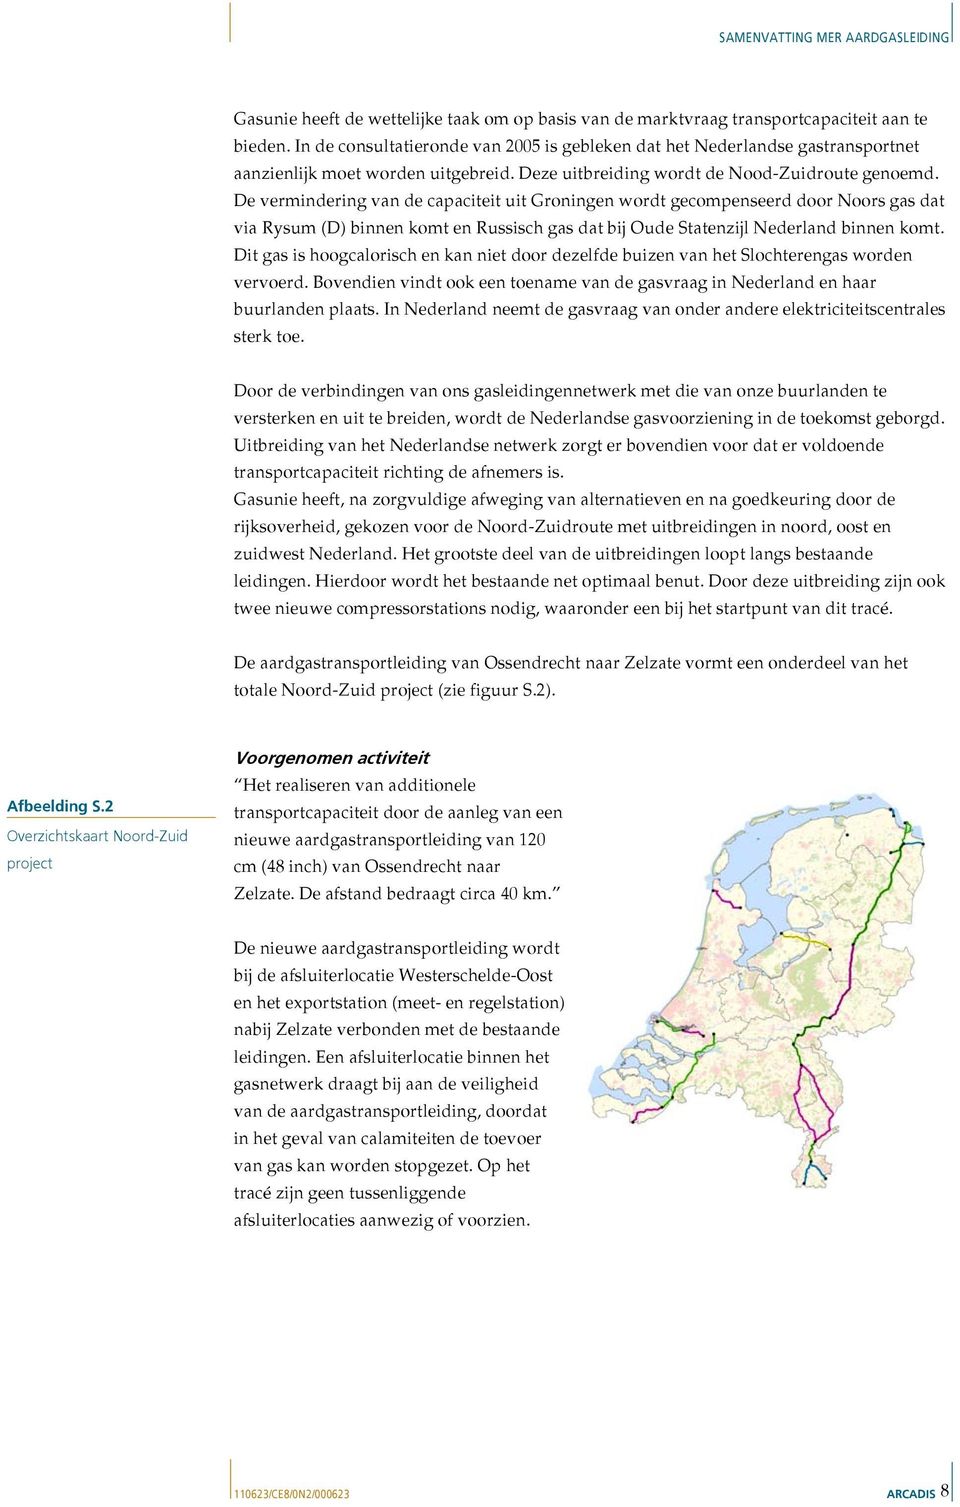 De vermindering van de capaciteit uit Groningen wordt gecompenseerd door Noors gas dat via Rysum (D) binnen komt en Russisch gas dat bij Oude Statenzijl Nederland binnen komt.